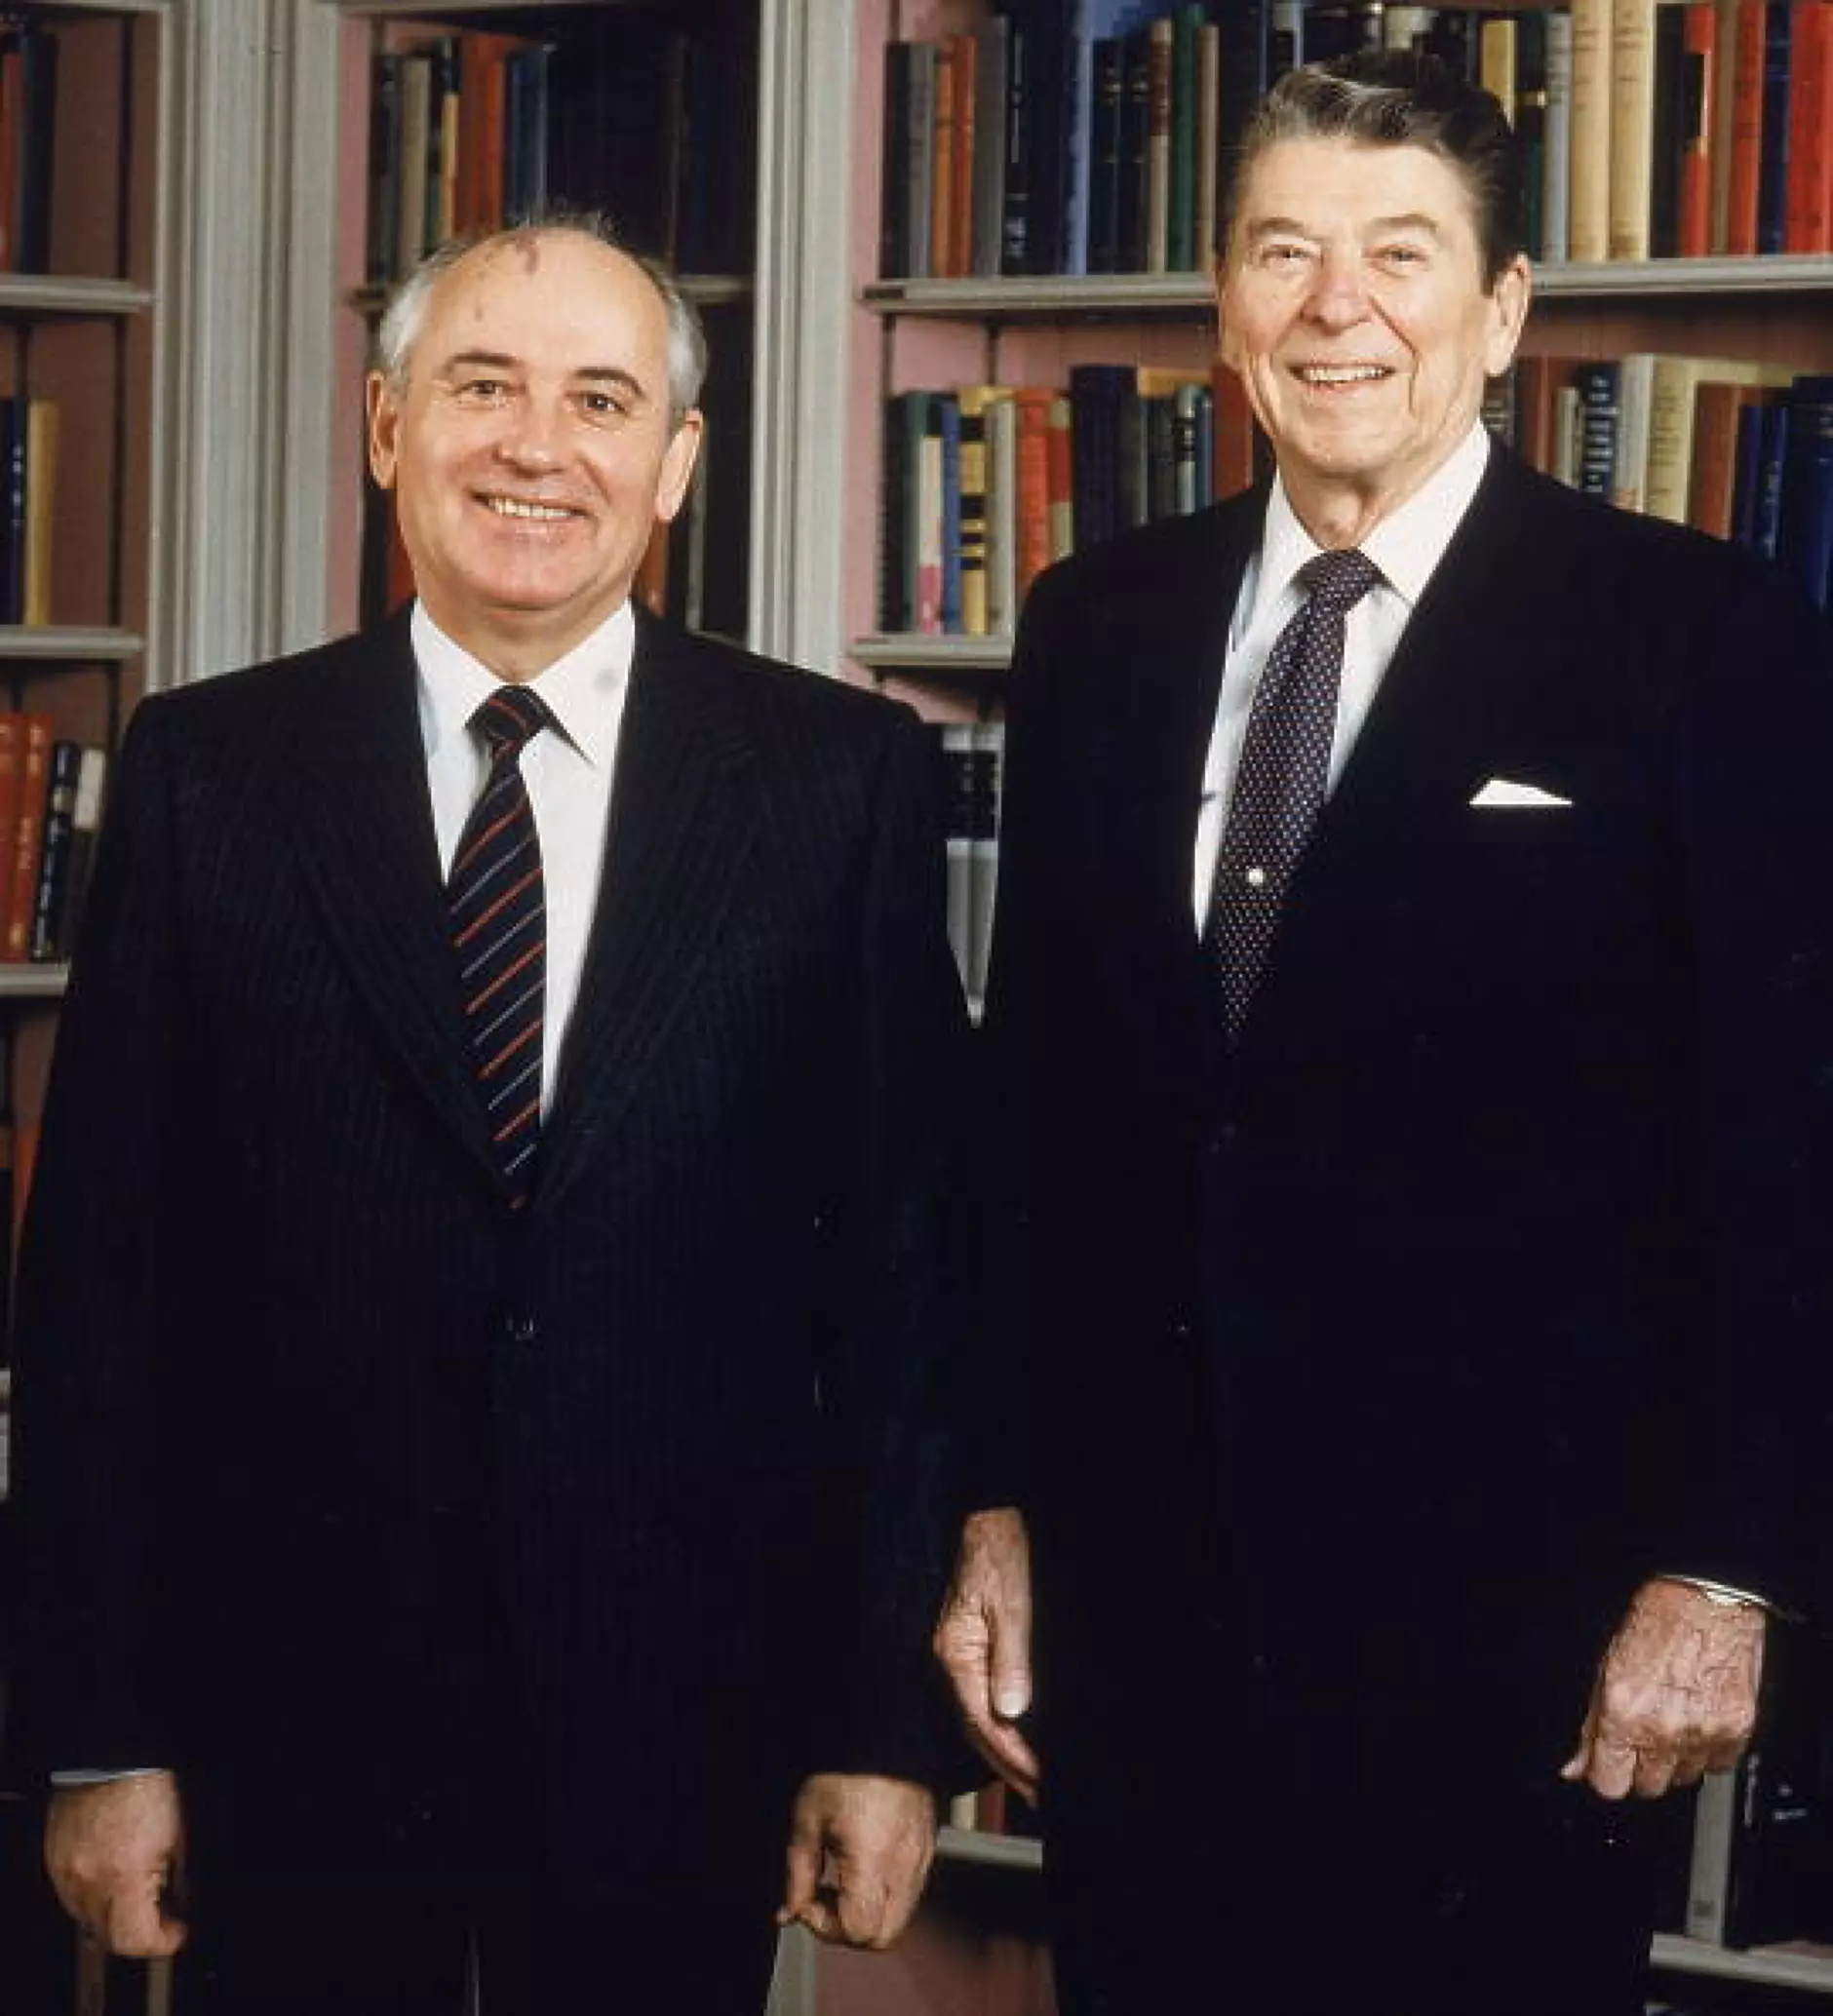 Световни лидери за Горбачов: Той видя различно бъдеще, смело рискува и промени хода на историята